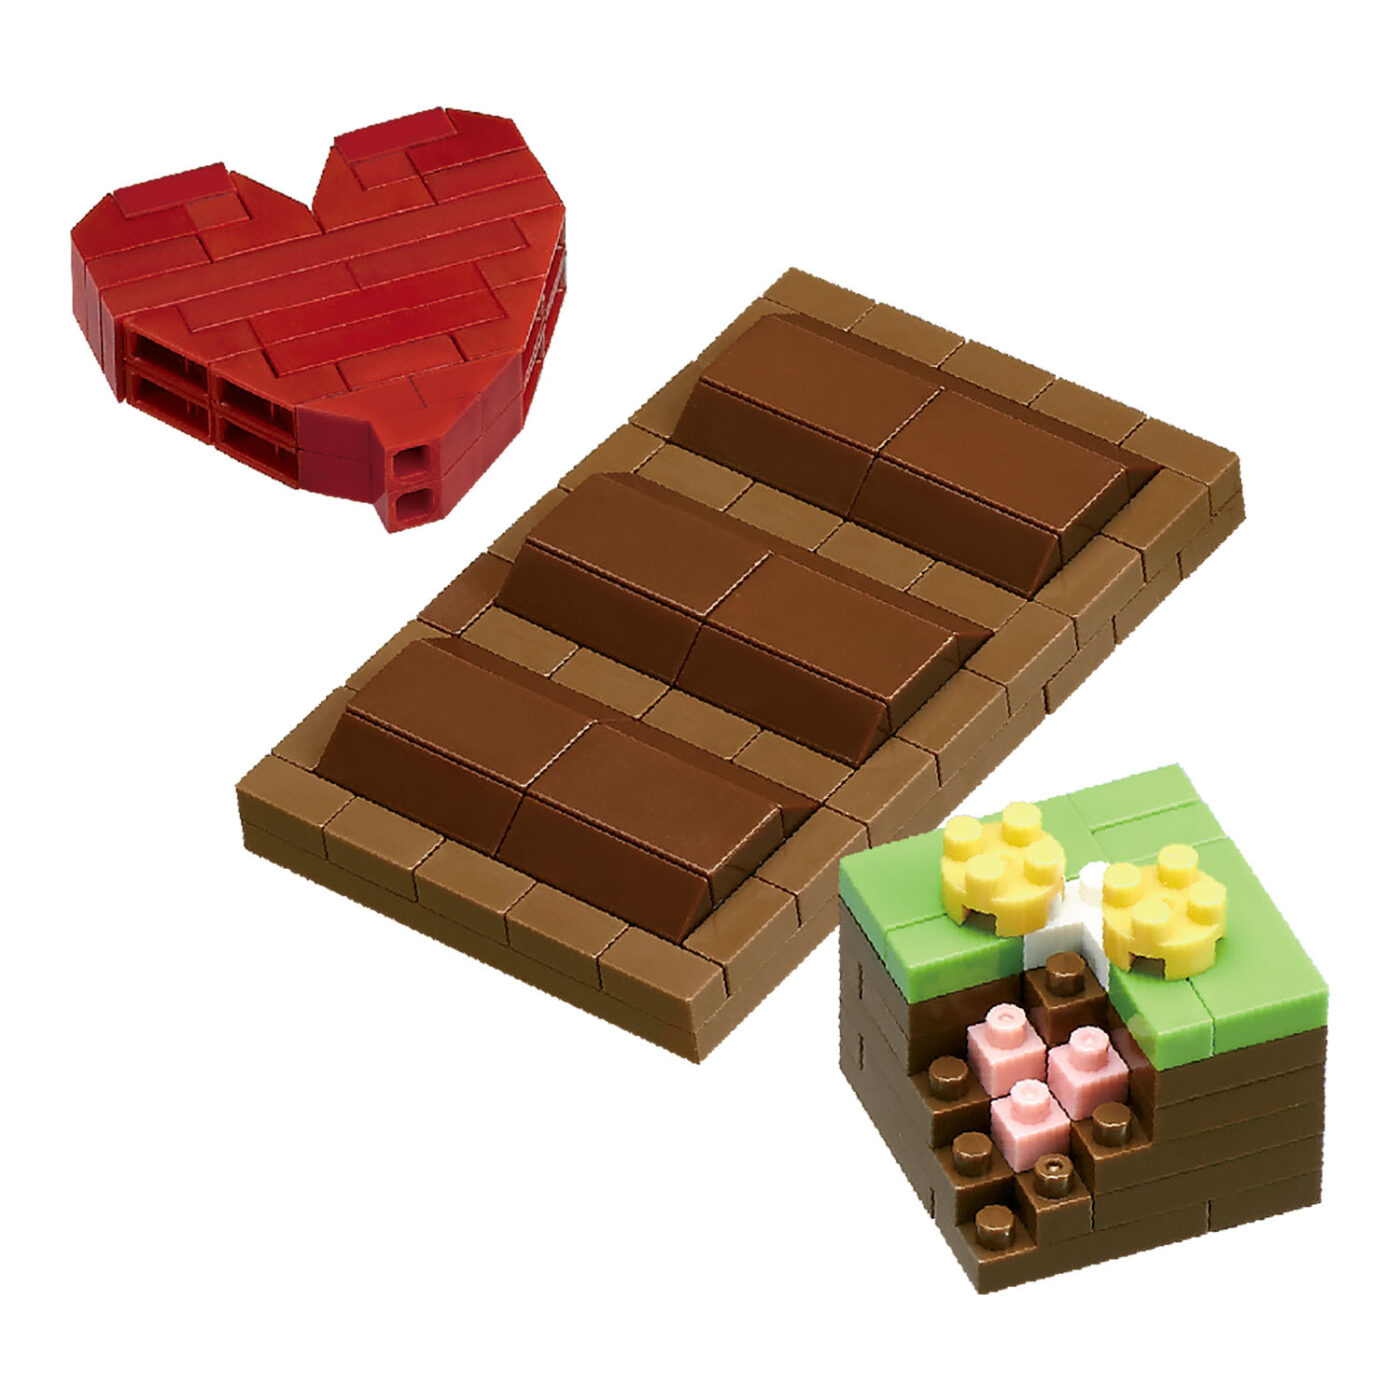 チョコレートの商品画像